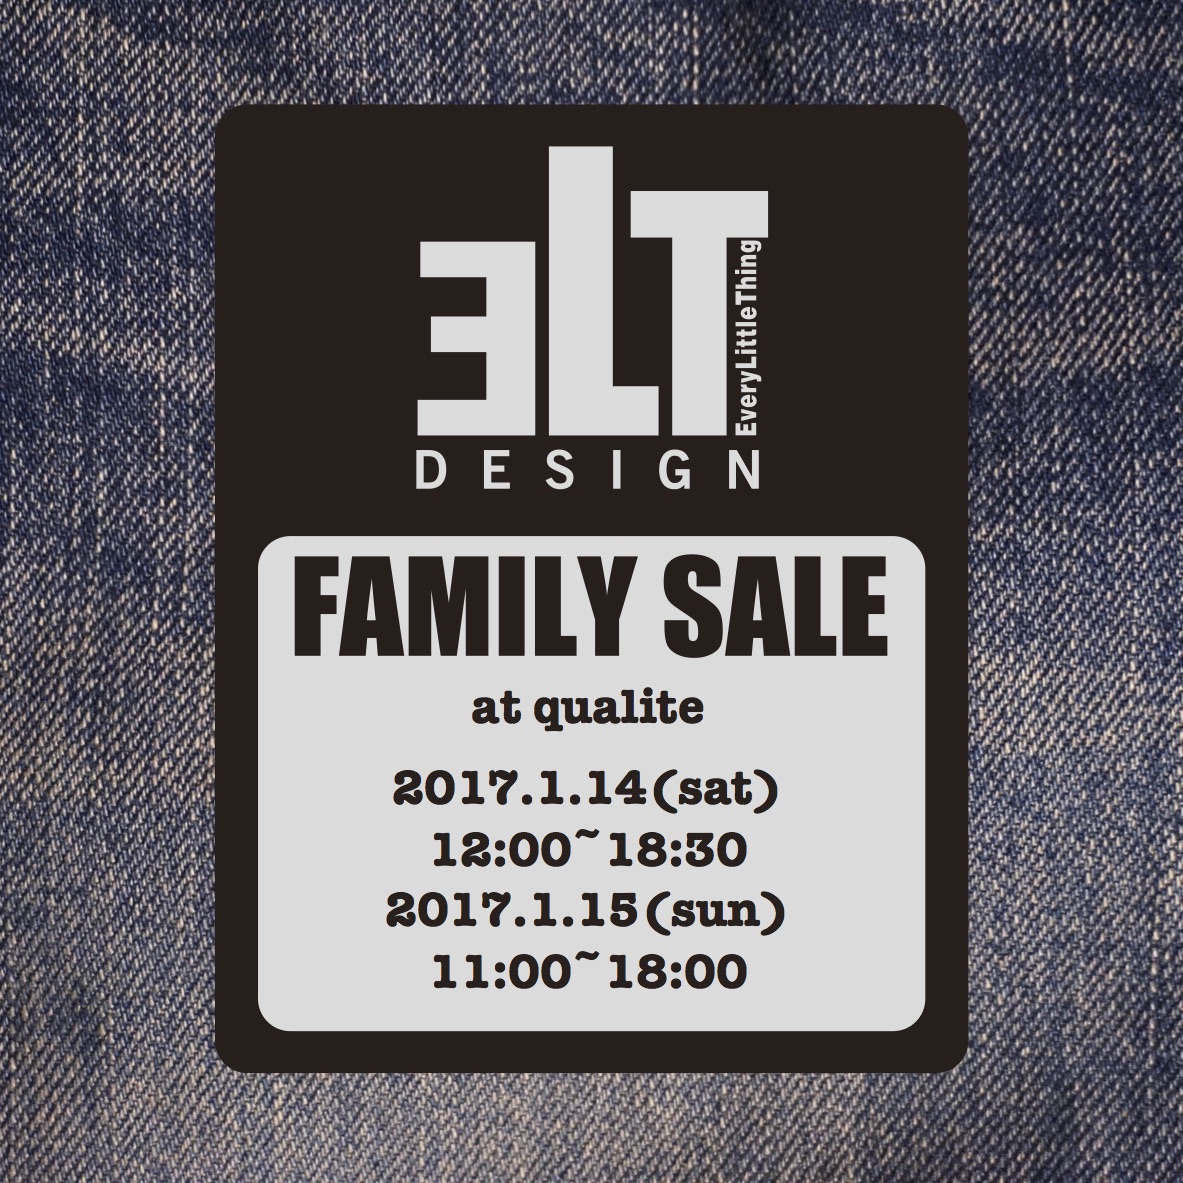 ELTdesign FAMILY SALEのお知らせです。